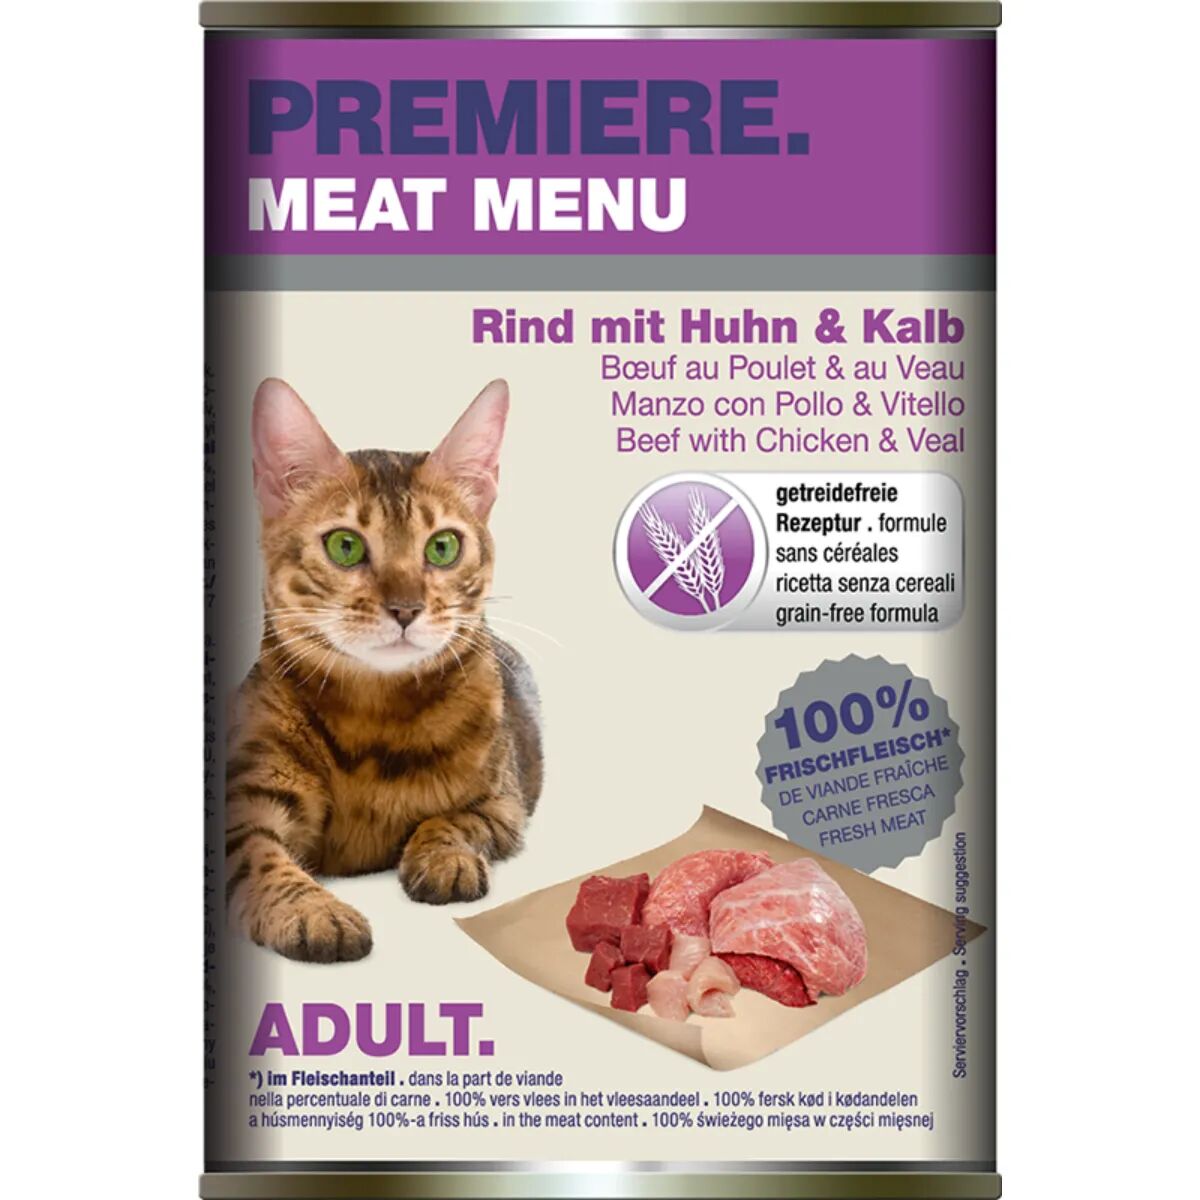 PREMIERE Meat Menu Cat Lattina 400G MANZO CON POLLO E VITELLO